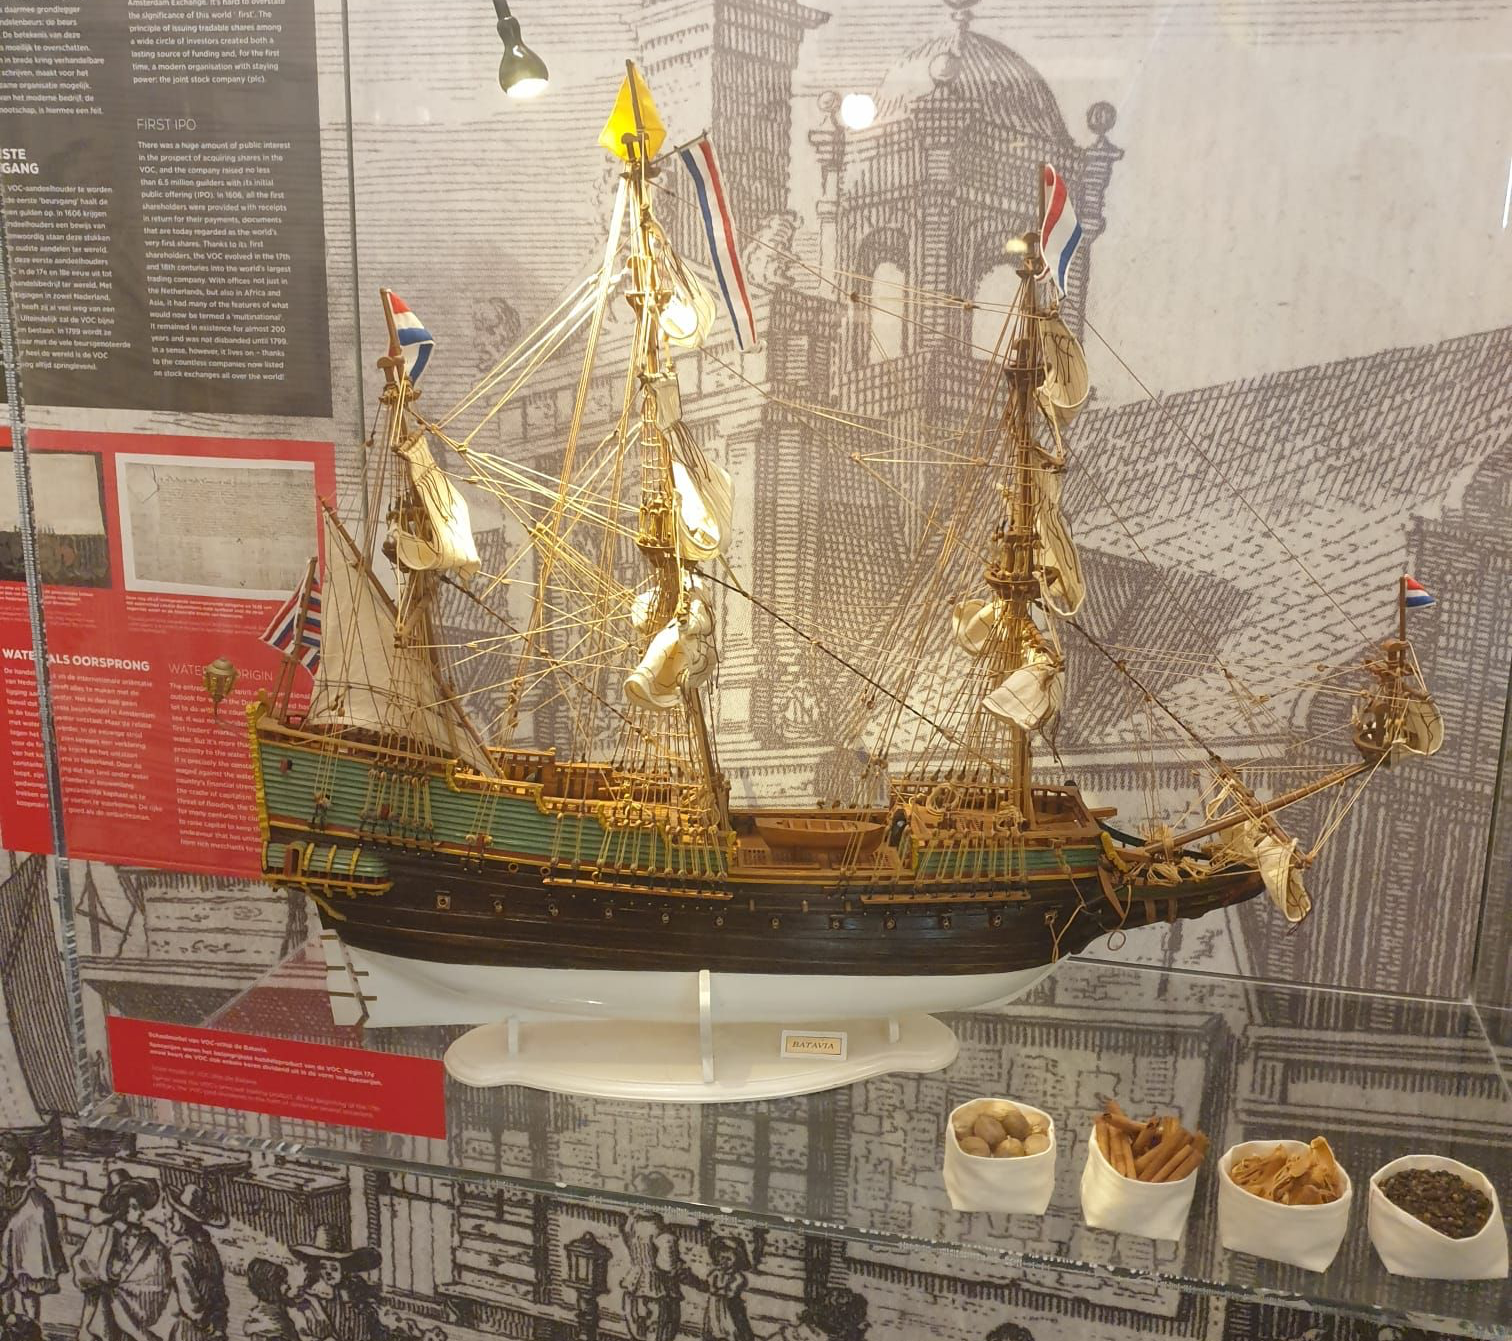 Modell der Batavia - Handelsschiff der Ostindischen Kompanie in der Börse Amsterdam